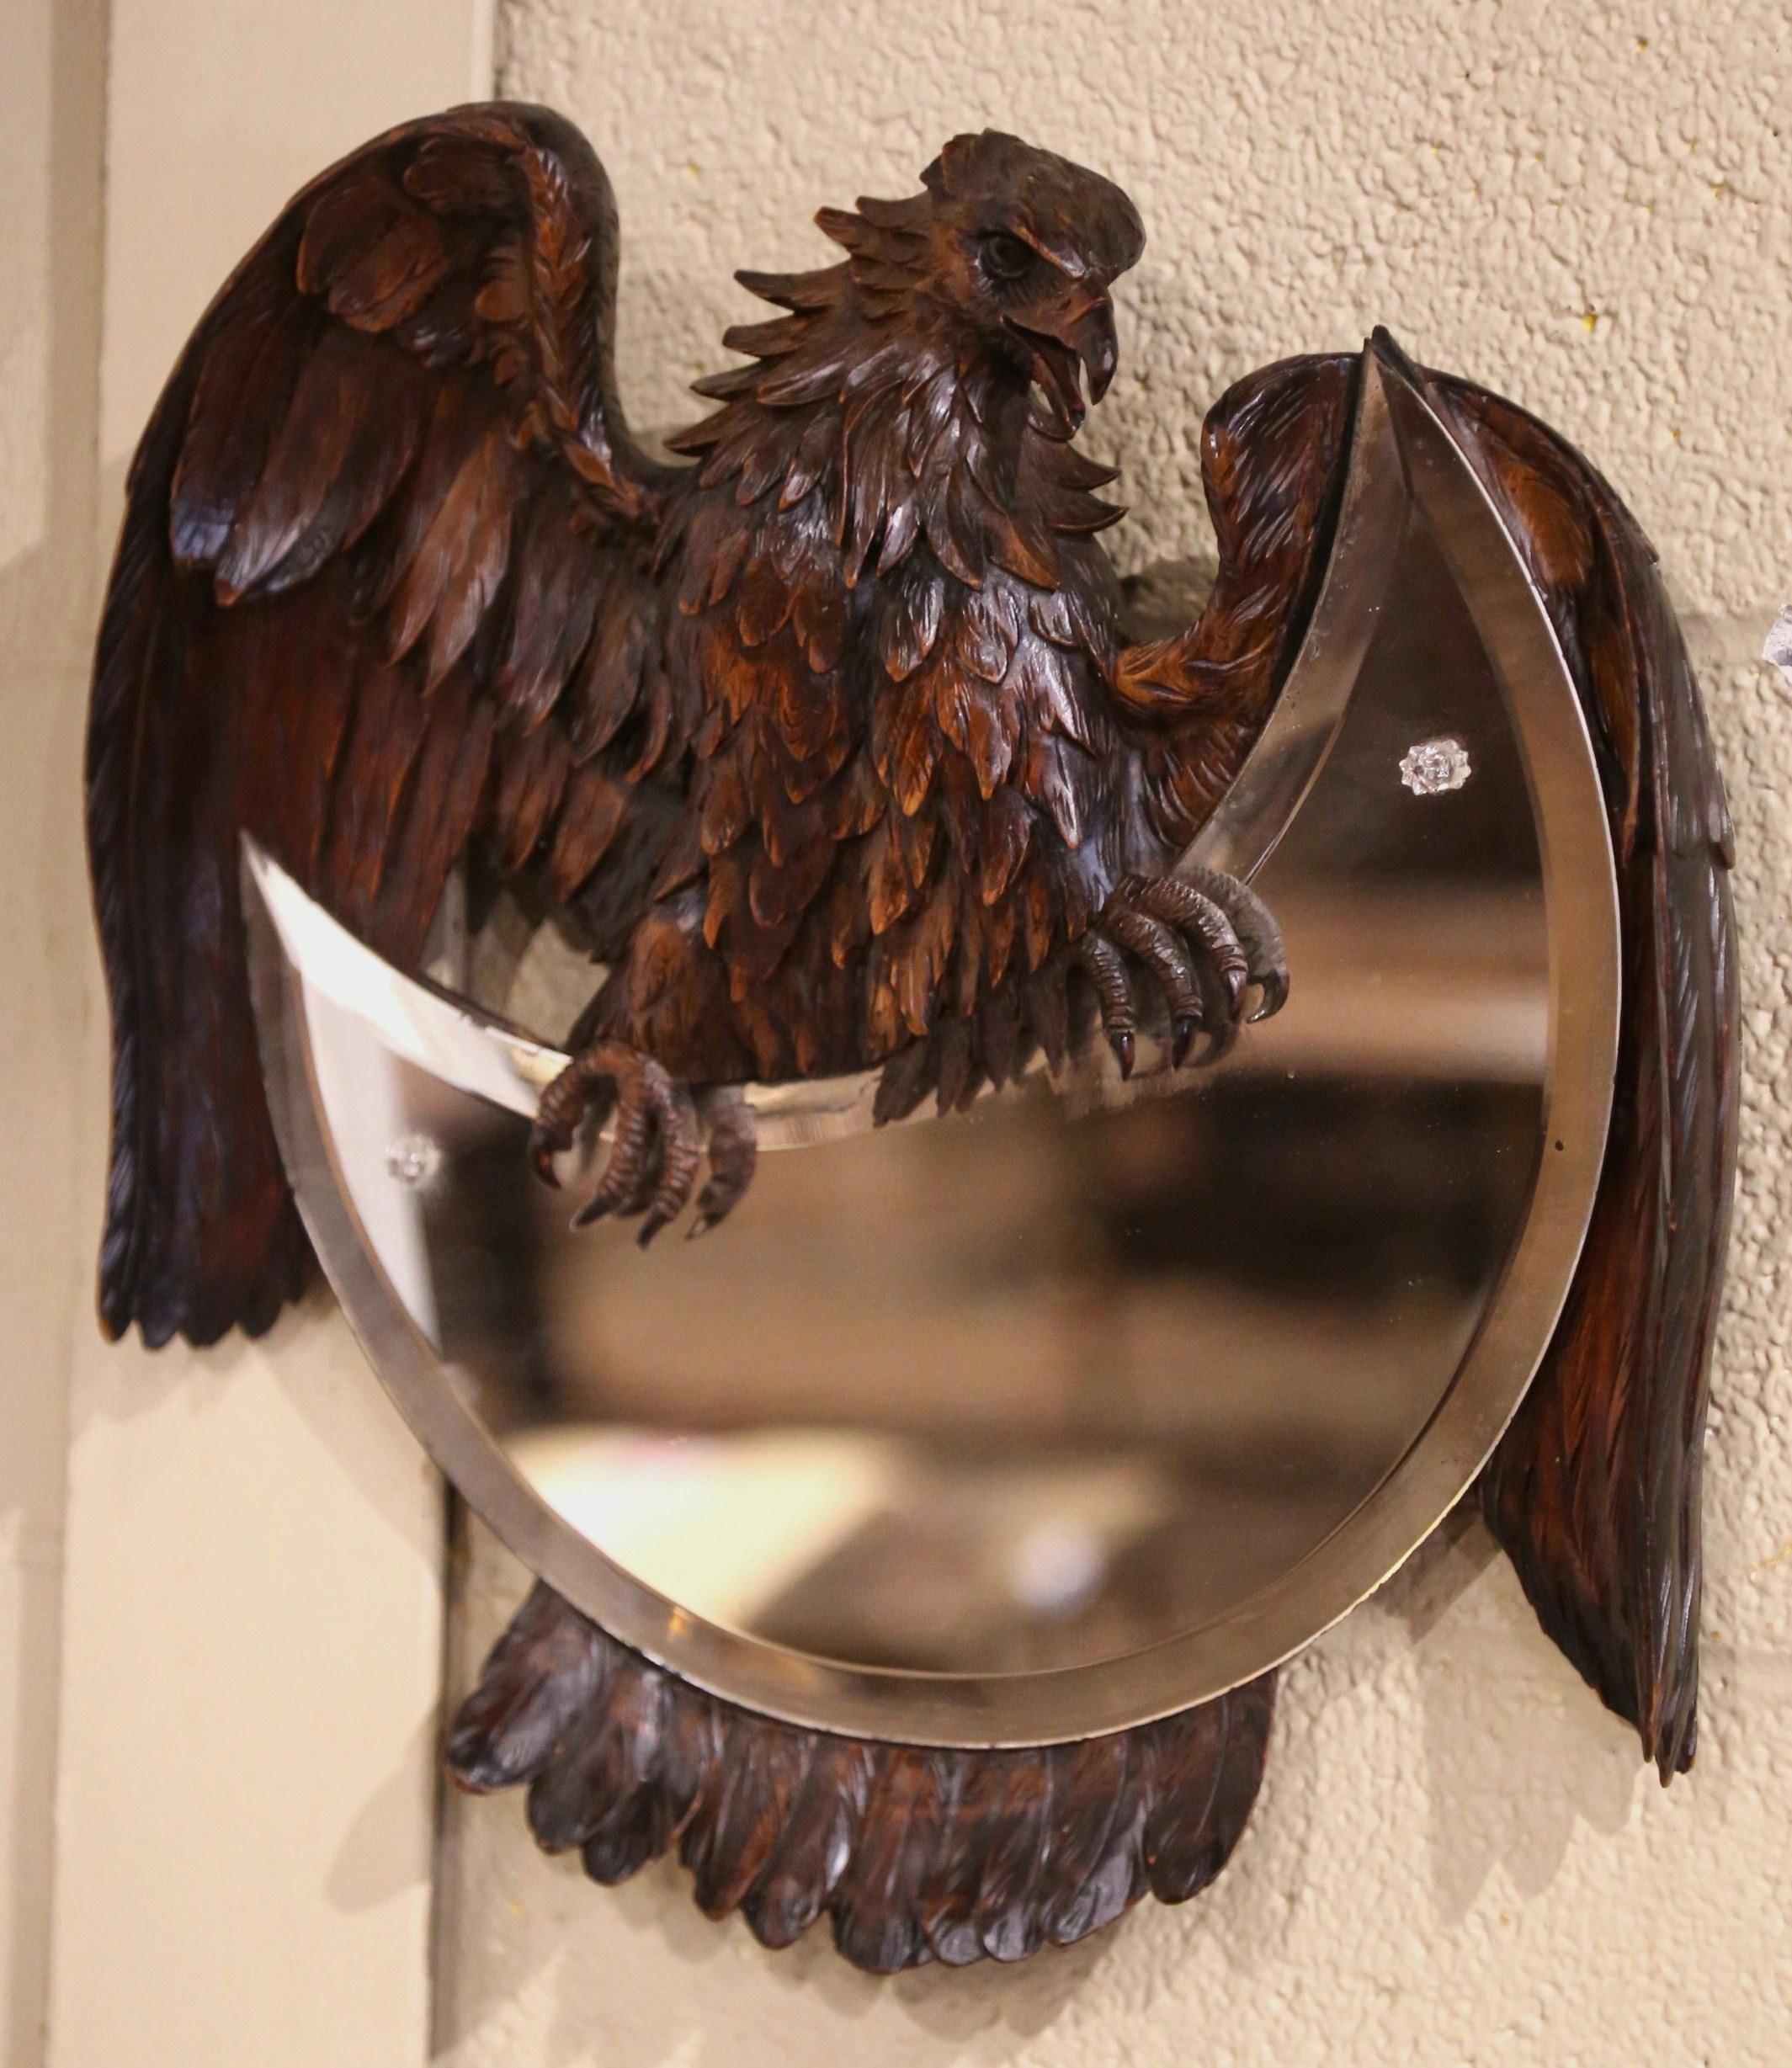 Dieser ungewöhnliche antike Spiegel wurde um 1880 in der französischen Alpenregion hergestellt. Der skurrile Spiegel zeigt eine große Adlerskulptur mit Flügeln und Schwanz, die um einen Halbmondspiegel mit abgeschrägtem Quecksilberglas gewickelt